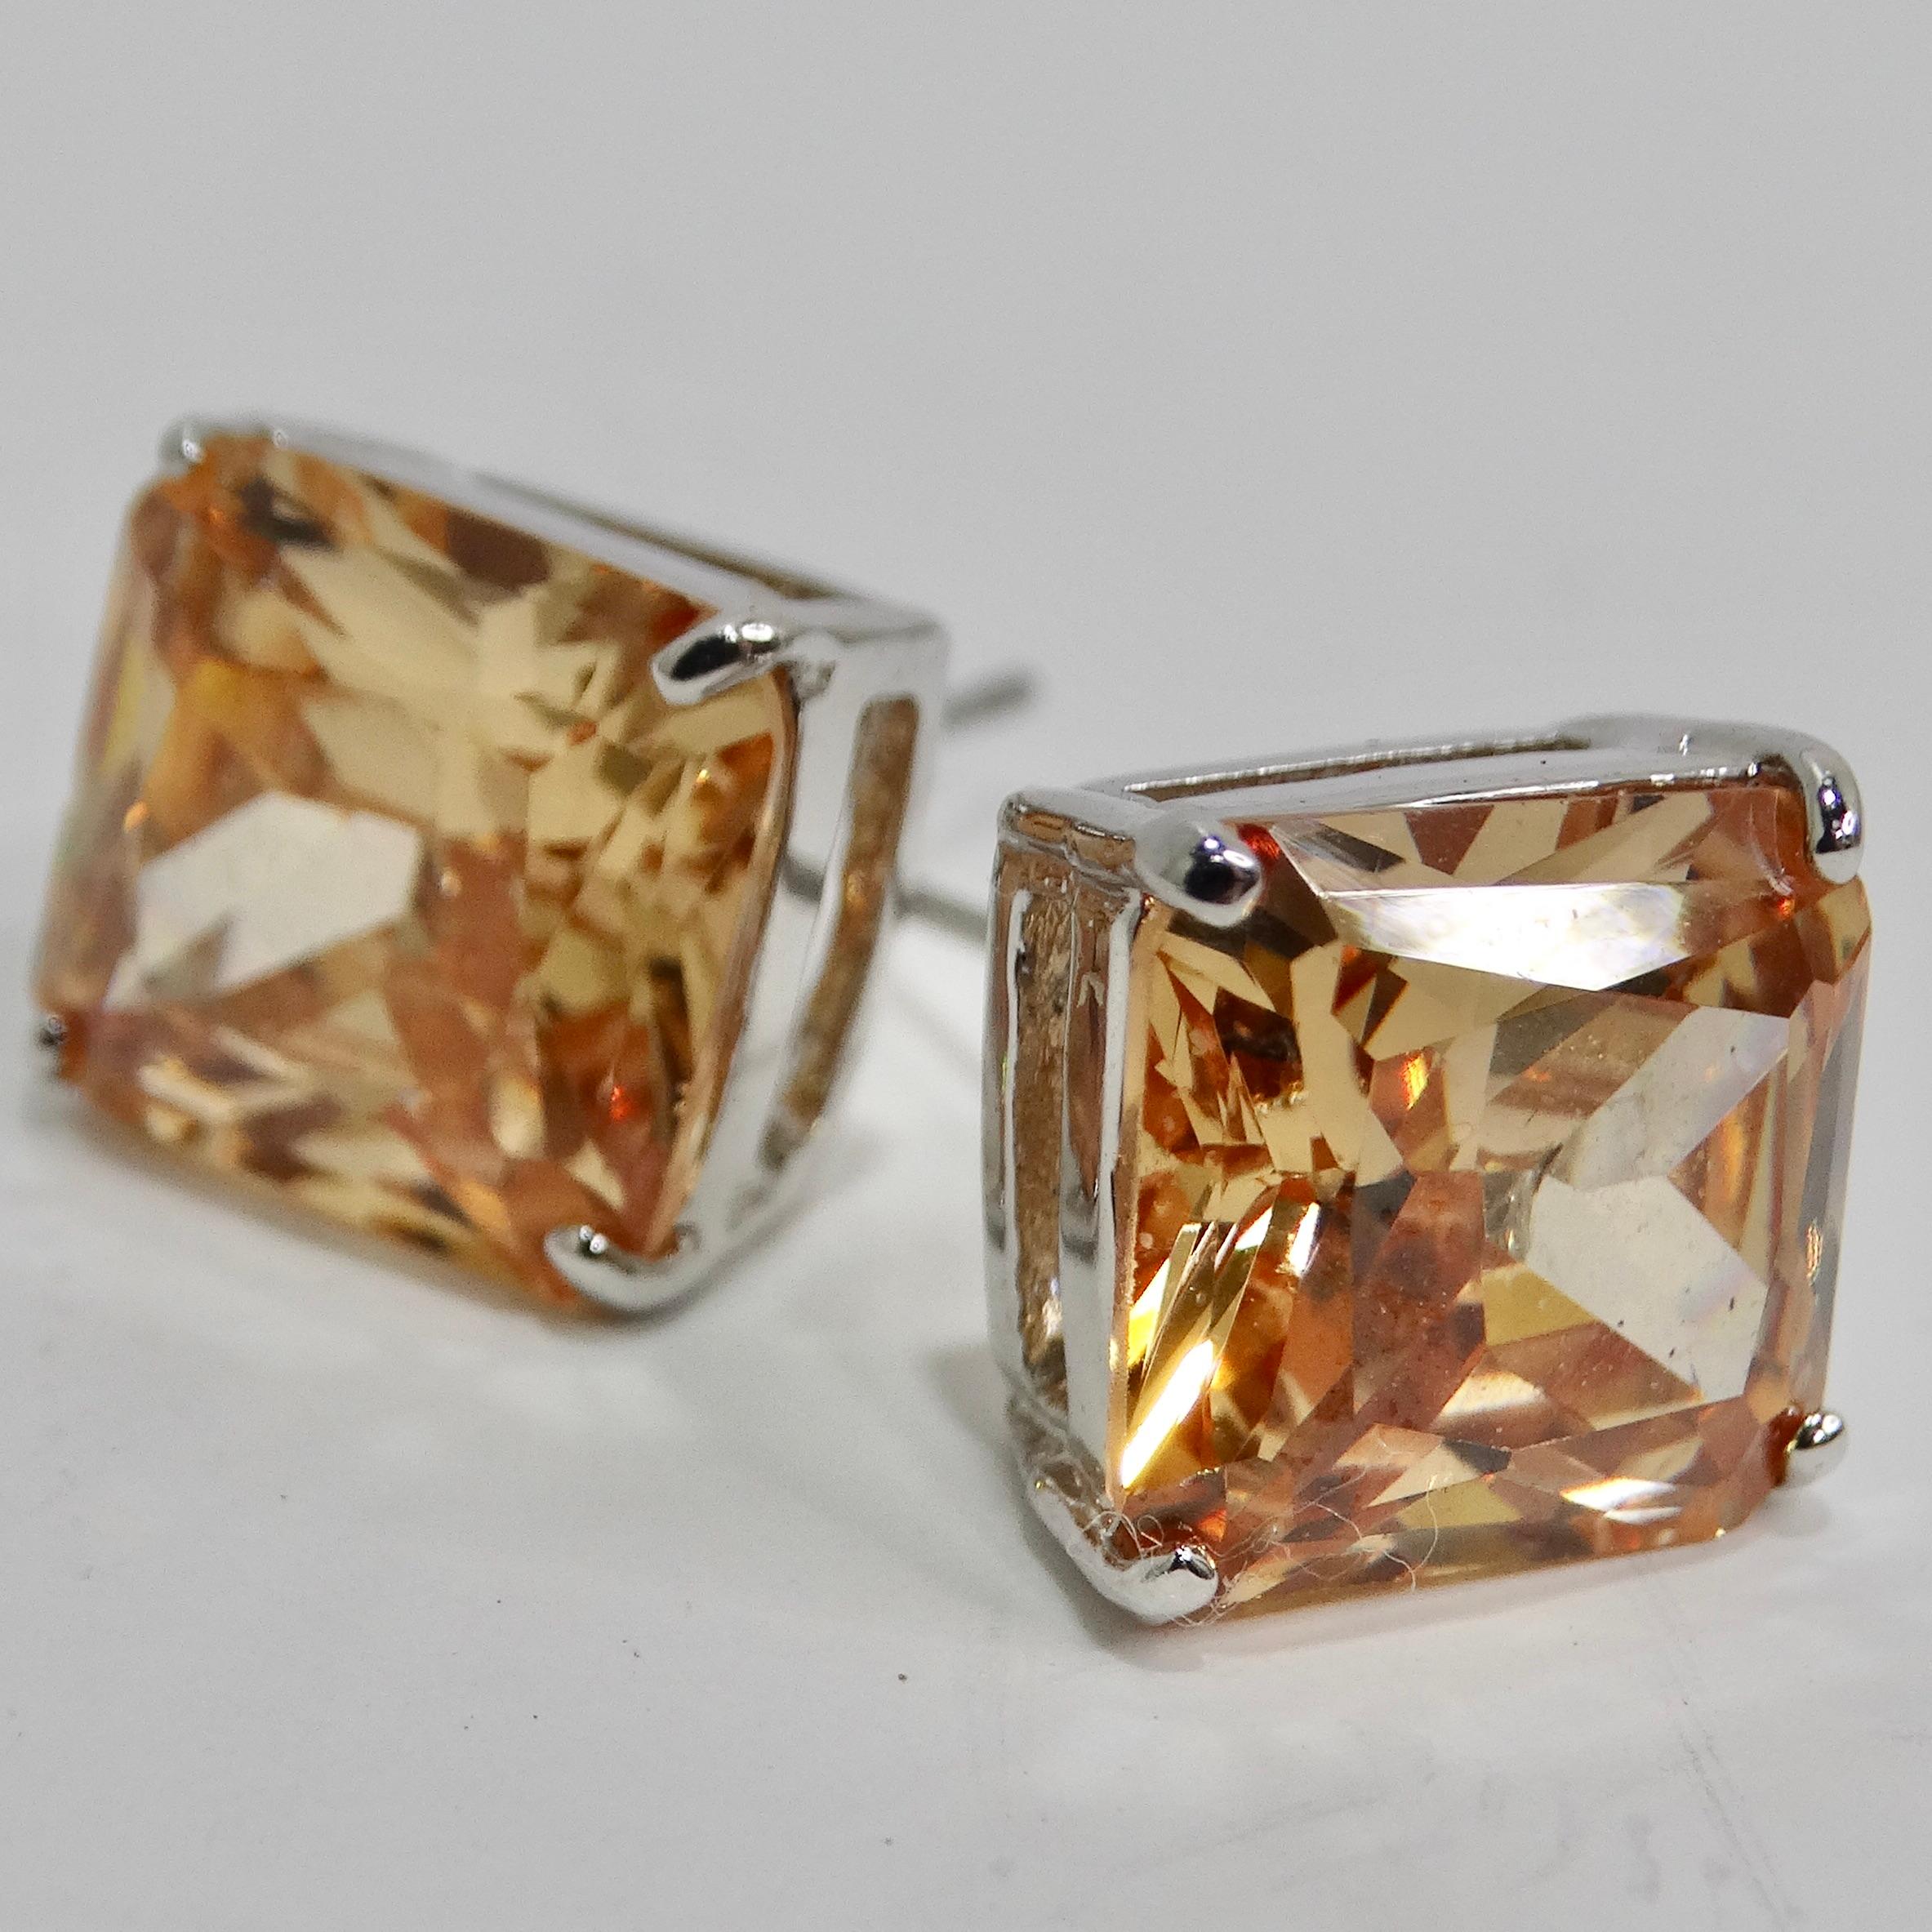 Unsere atemberaubenden Ohrstecker in 18 Karat vergoldetem synthetischem Swarovski Kristall sind eine klassische und vielseitige Ergänzung für Ihre Schmucksammlung. Ungefähr 5 Karat pro Stück! Diese zeitlosen Ohrstecker mit Swarovski Kristallen im